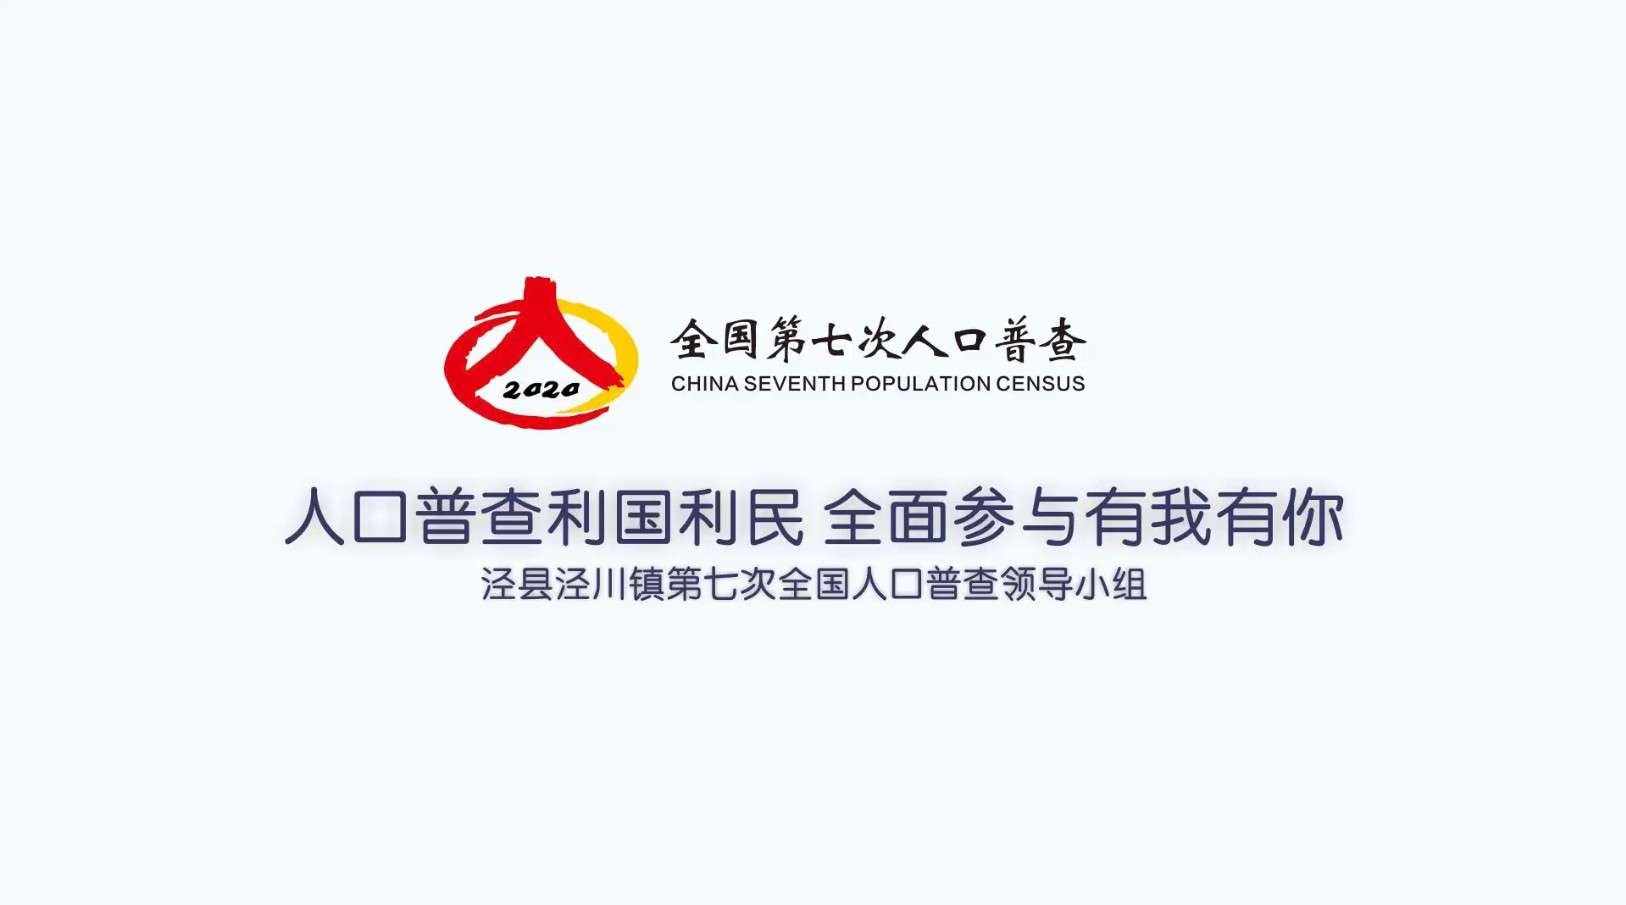 2020年泾县泾川镇全国第七次人口普查宣传短片